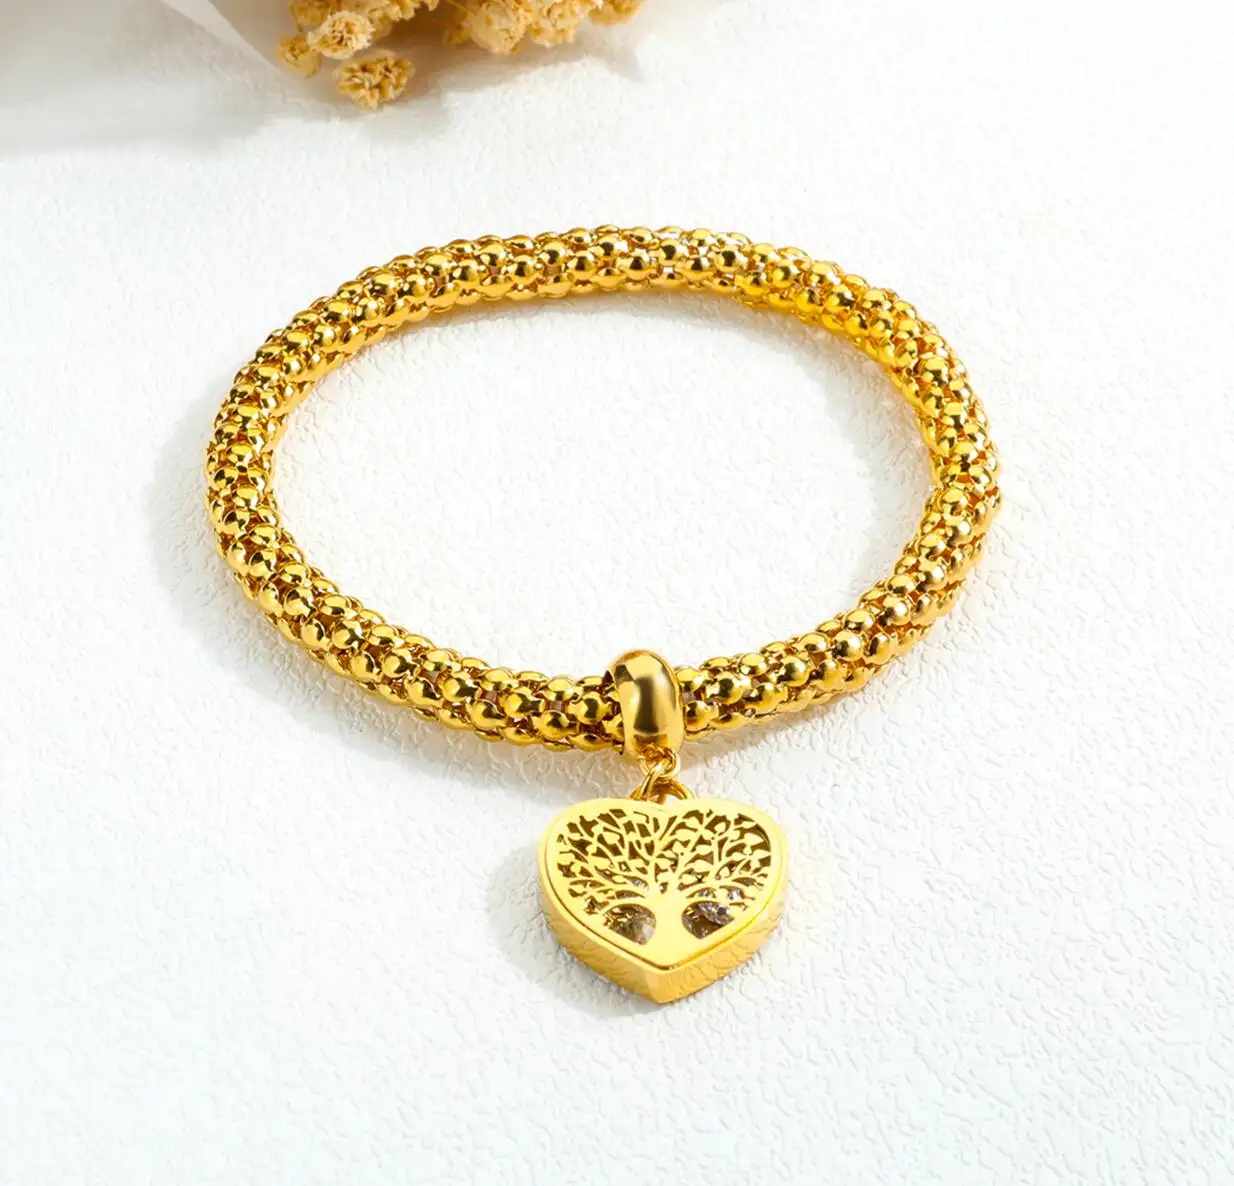 Accessori donna Love Heart Charm bracciale in acciaio inossidabile placcato oro